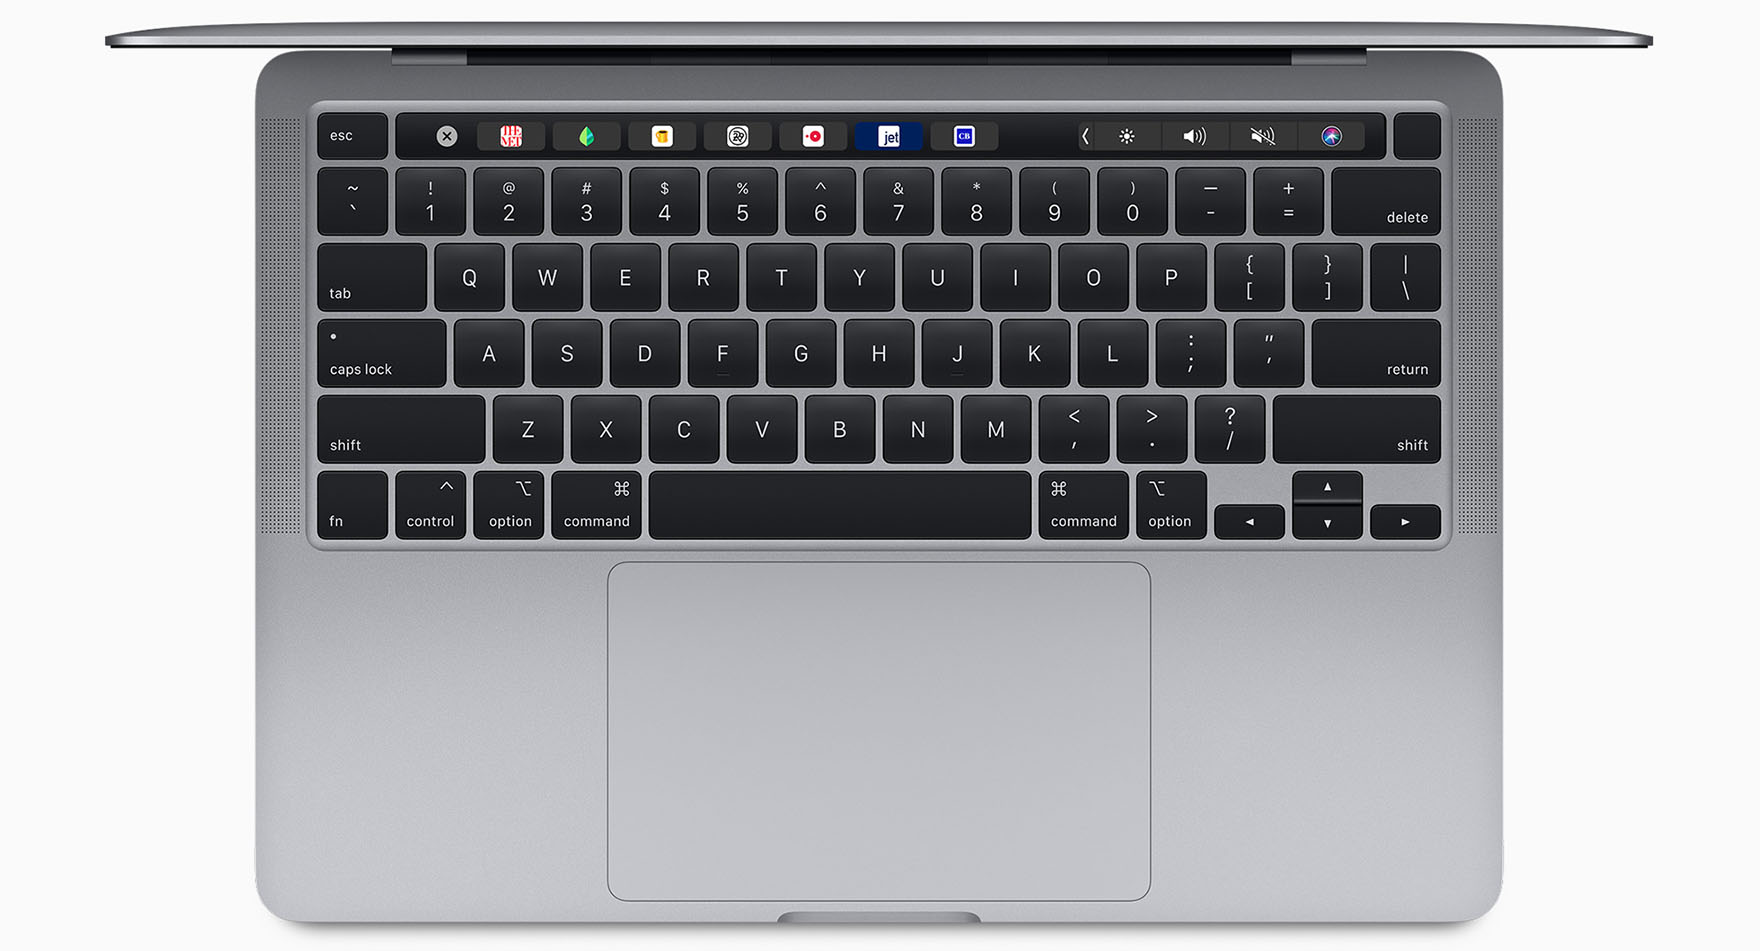 Macbook Pro 13 Aktualisiert Bessere Tastatur Doppelter Speicher Mehr Power Fotointern Ch esaktuelle Fotonews